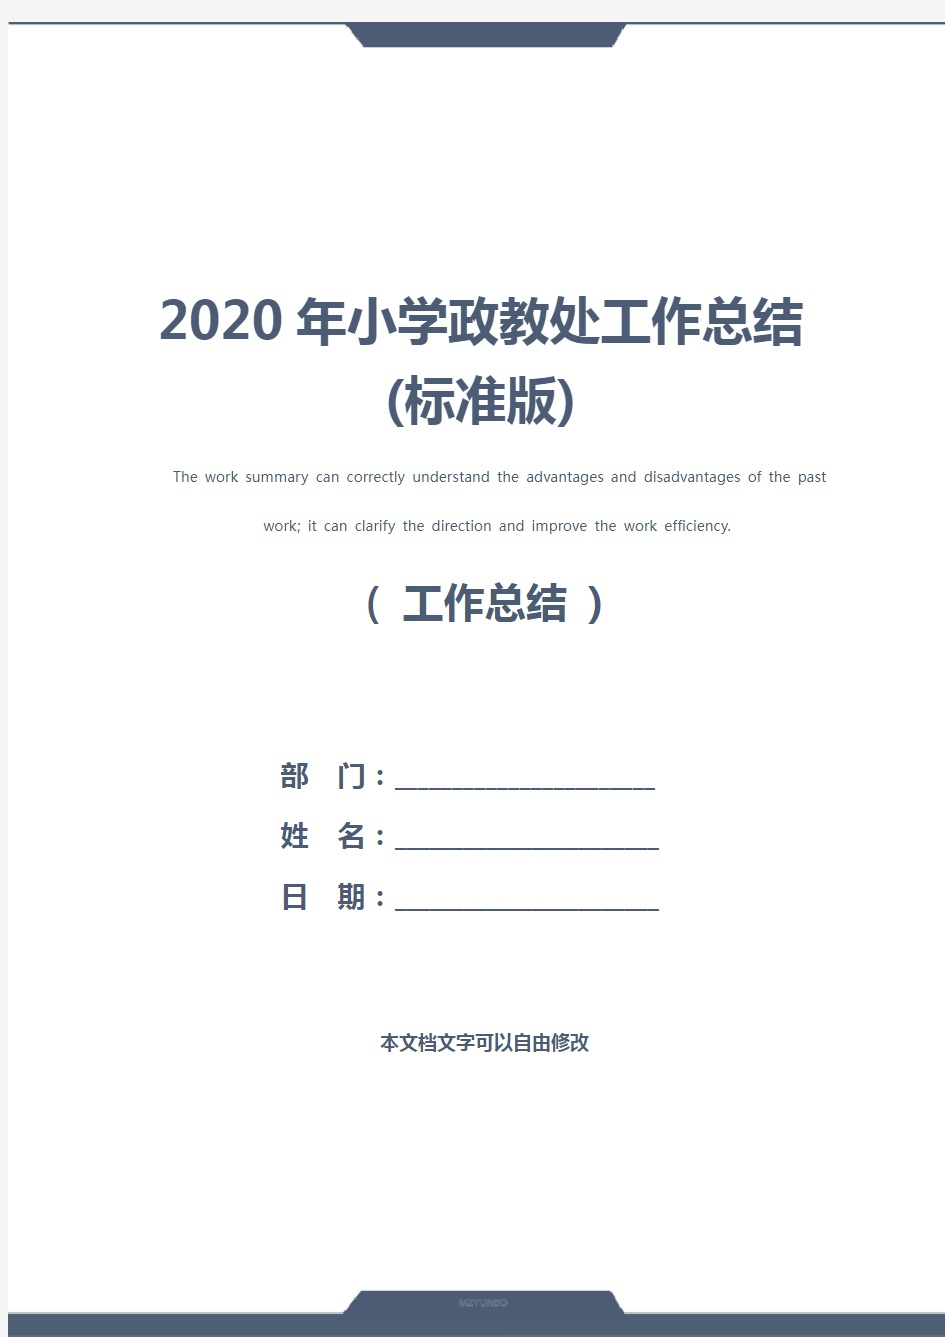 2020年小学政教处工作总结(标准版)